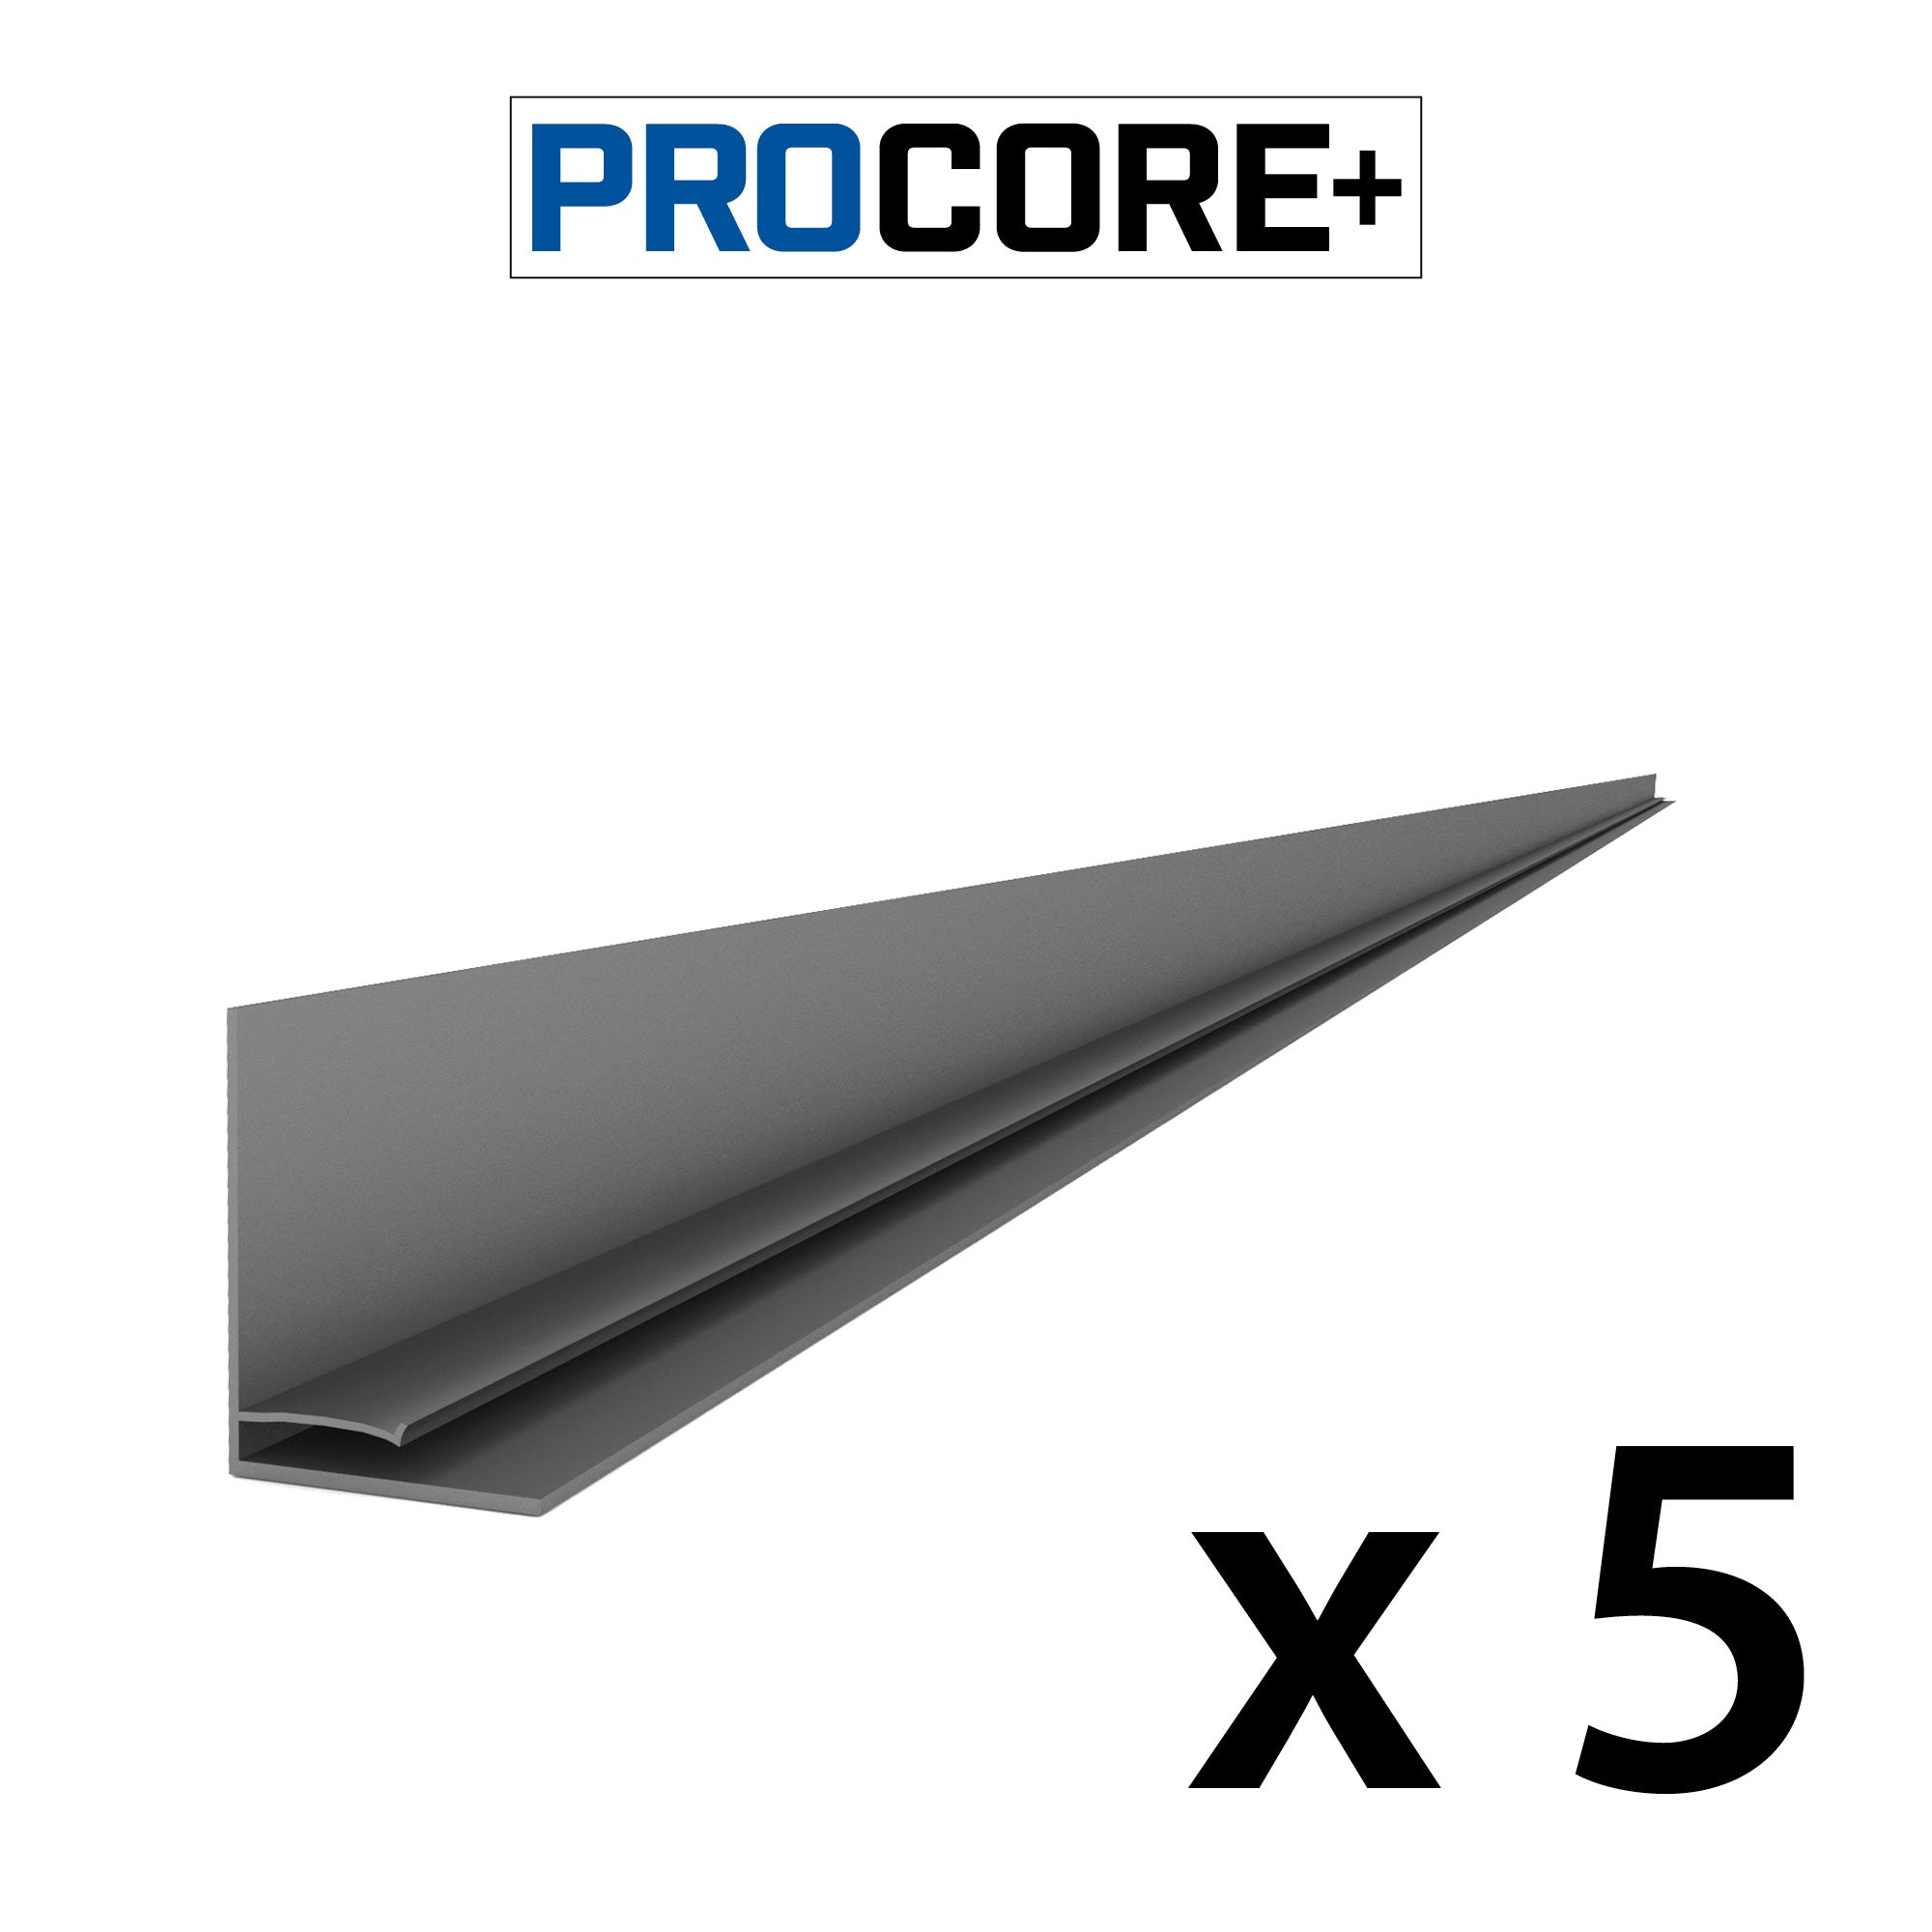 Proslat 8 ft. PROCORE+ PVC Top Trim Pack - 5 Pack - L Trims